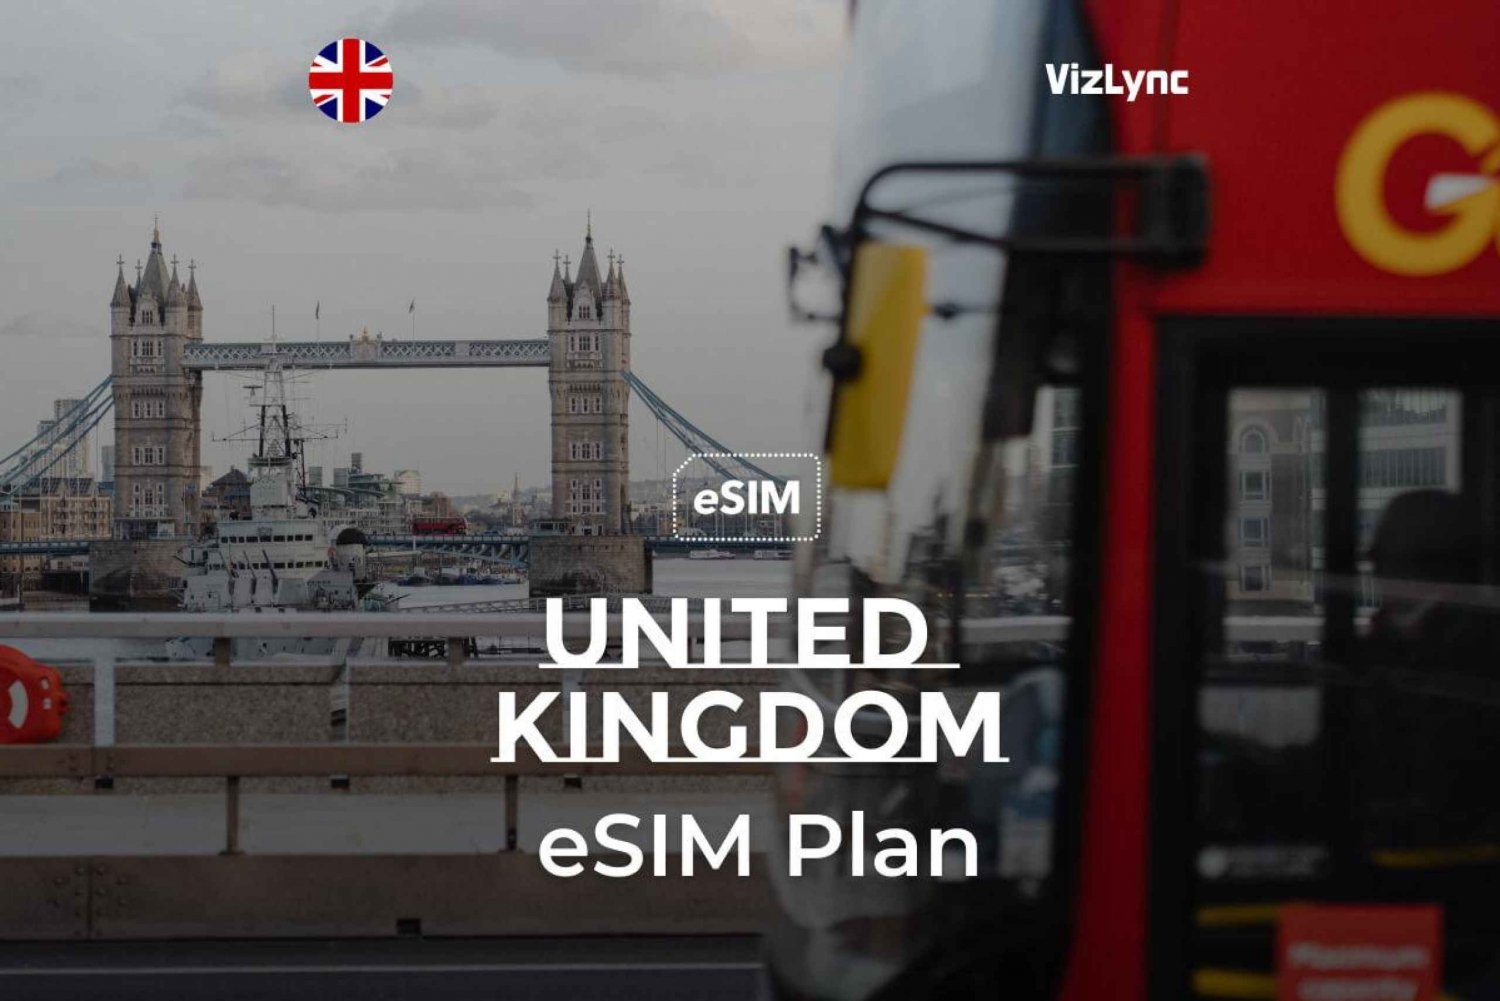 UK eSIM-Tarif mit unbegrenzten Daten in Großbritannien und Anrufen in die EU